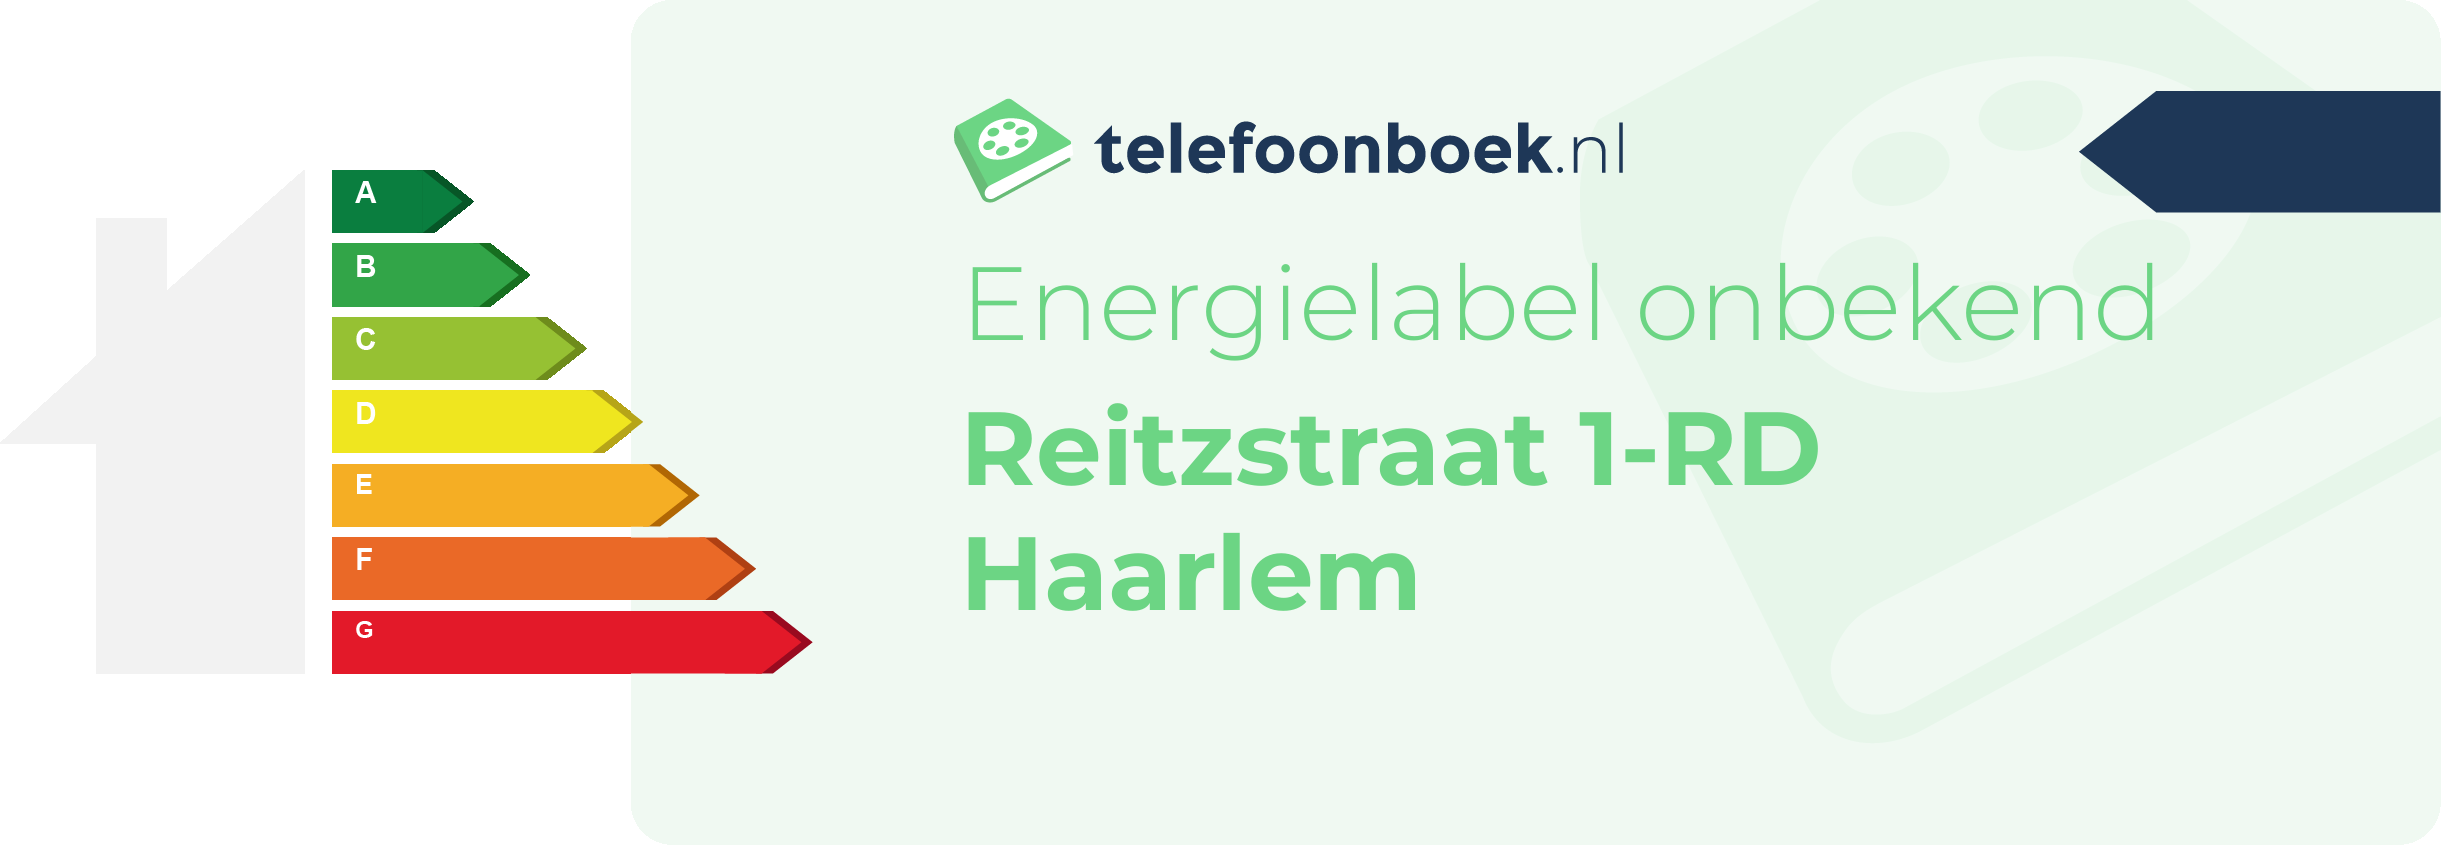 Energielabel Reitzstraat 1-RD Haarlem